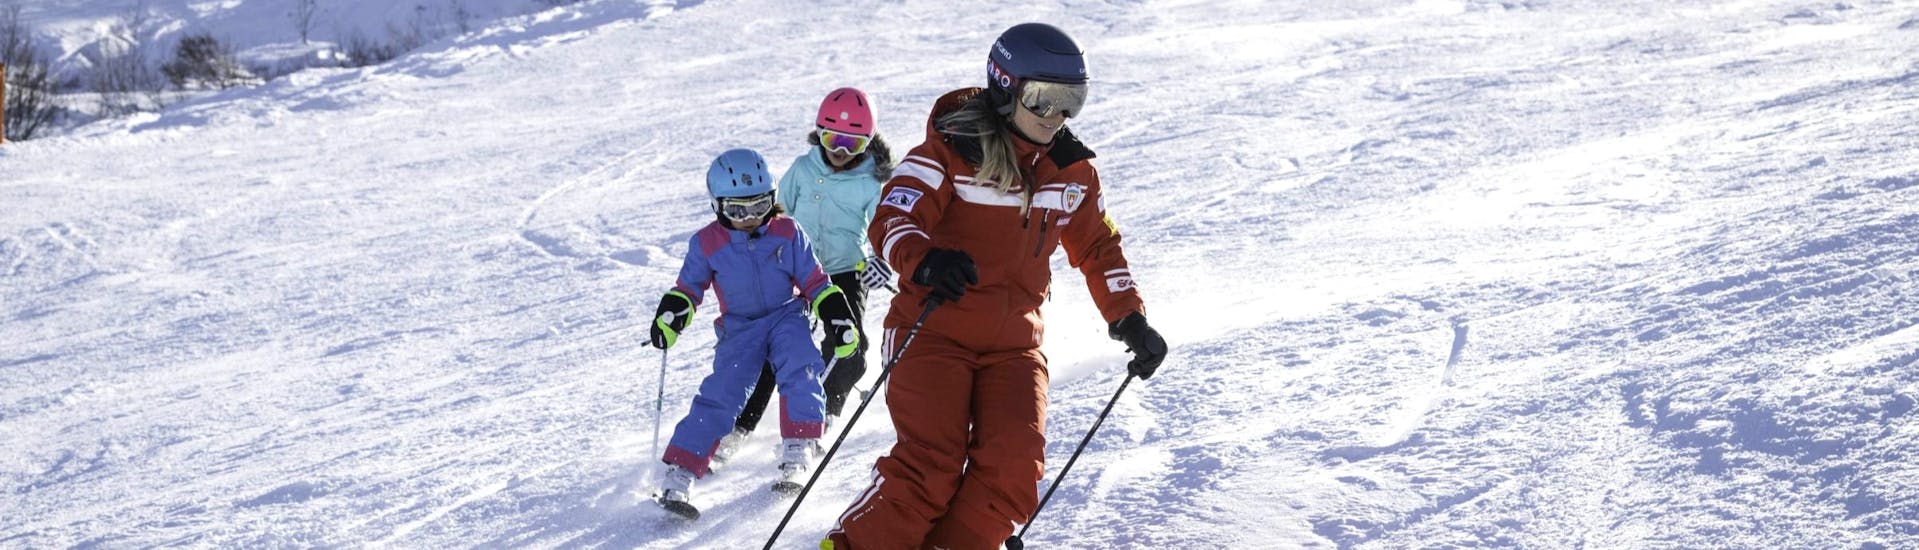 Clases de esquí privadas para niños a partir de 3 años.